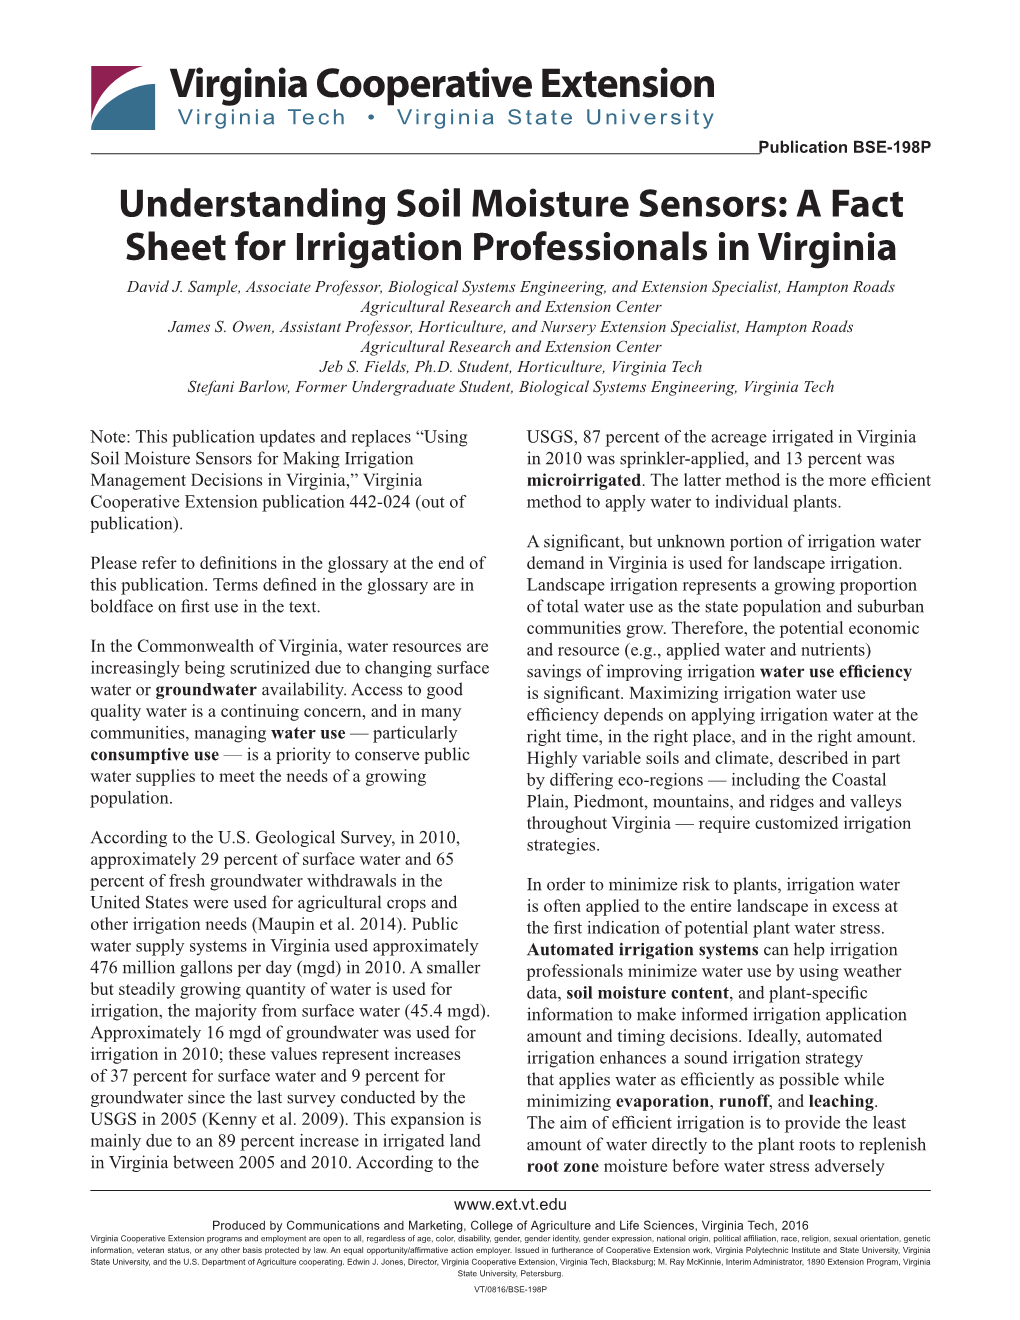 Understanding Soil Moisture Sensors: a Fact Sheet for Irrigation Professionals in Virginia David J